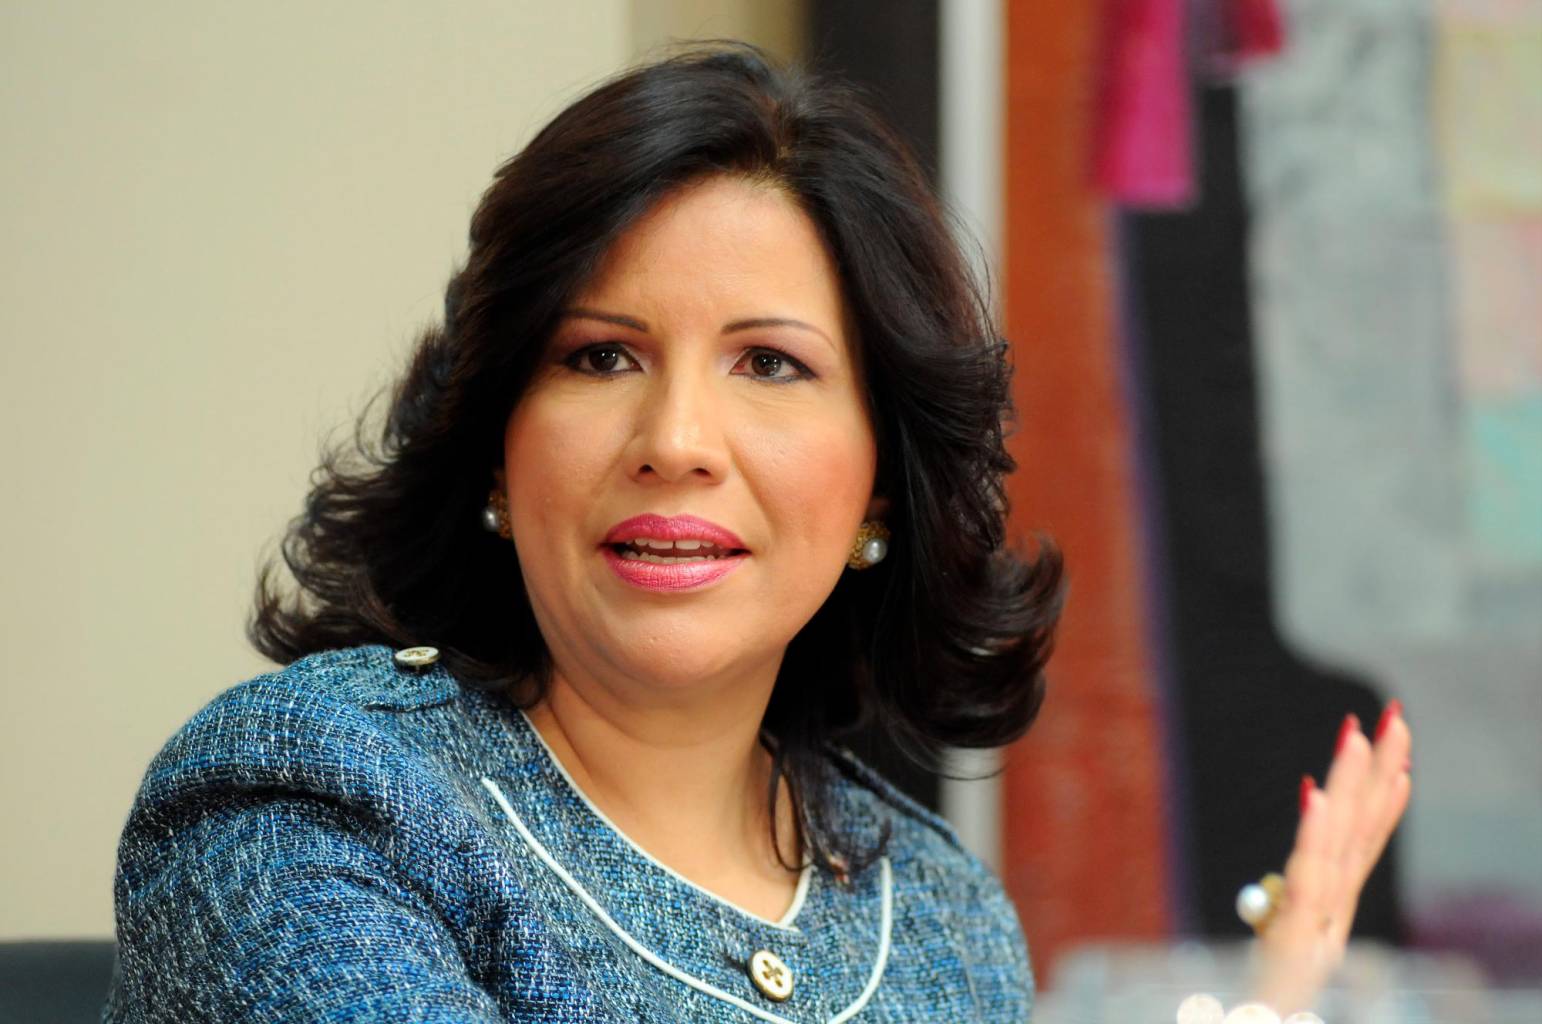 La vicepresidenta del gobierno de Danilo Medina, Margarita Cedeño anuncia su respaldo a Leonel Fernández